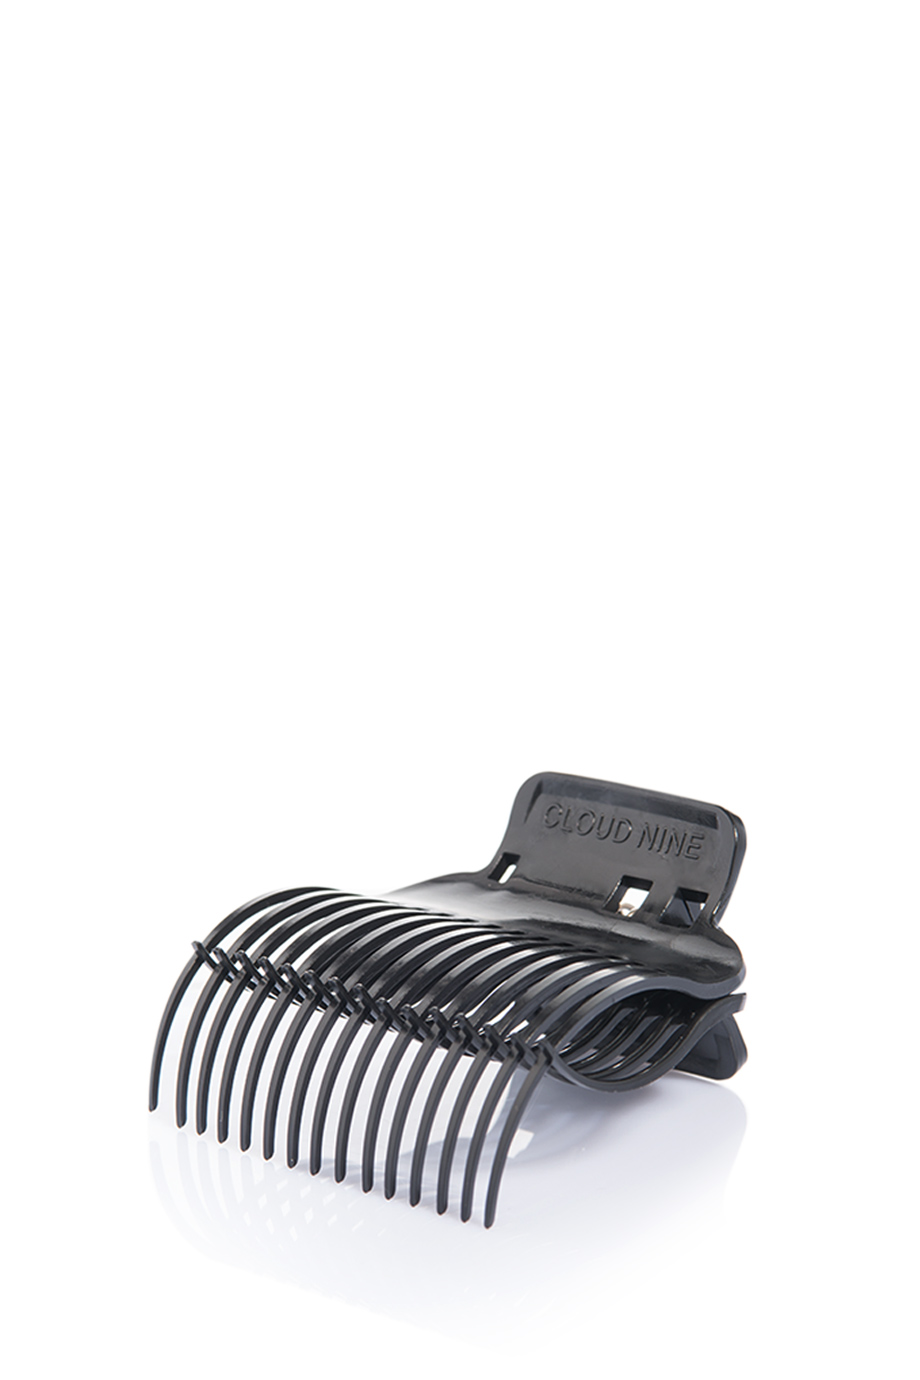 Клипсы для роллеров 50-60 мм TheO Roller Clips (4 шт.) в интернет-магазине Authentica.love